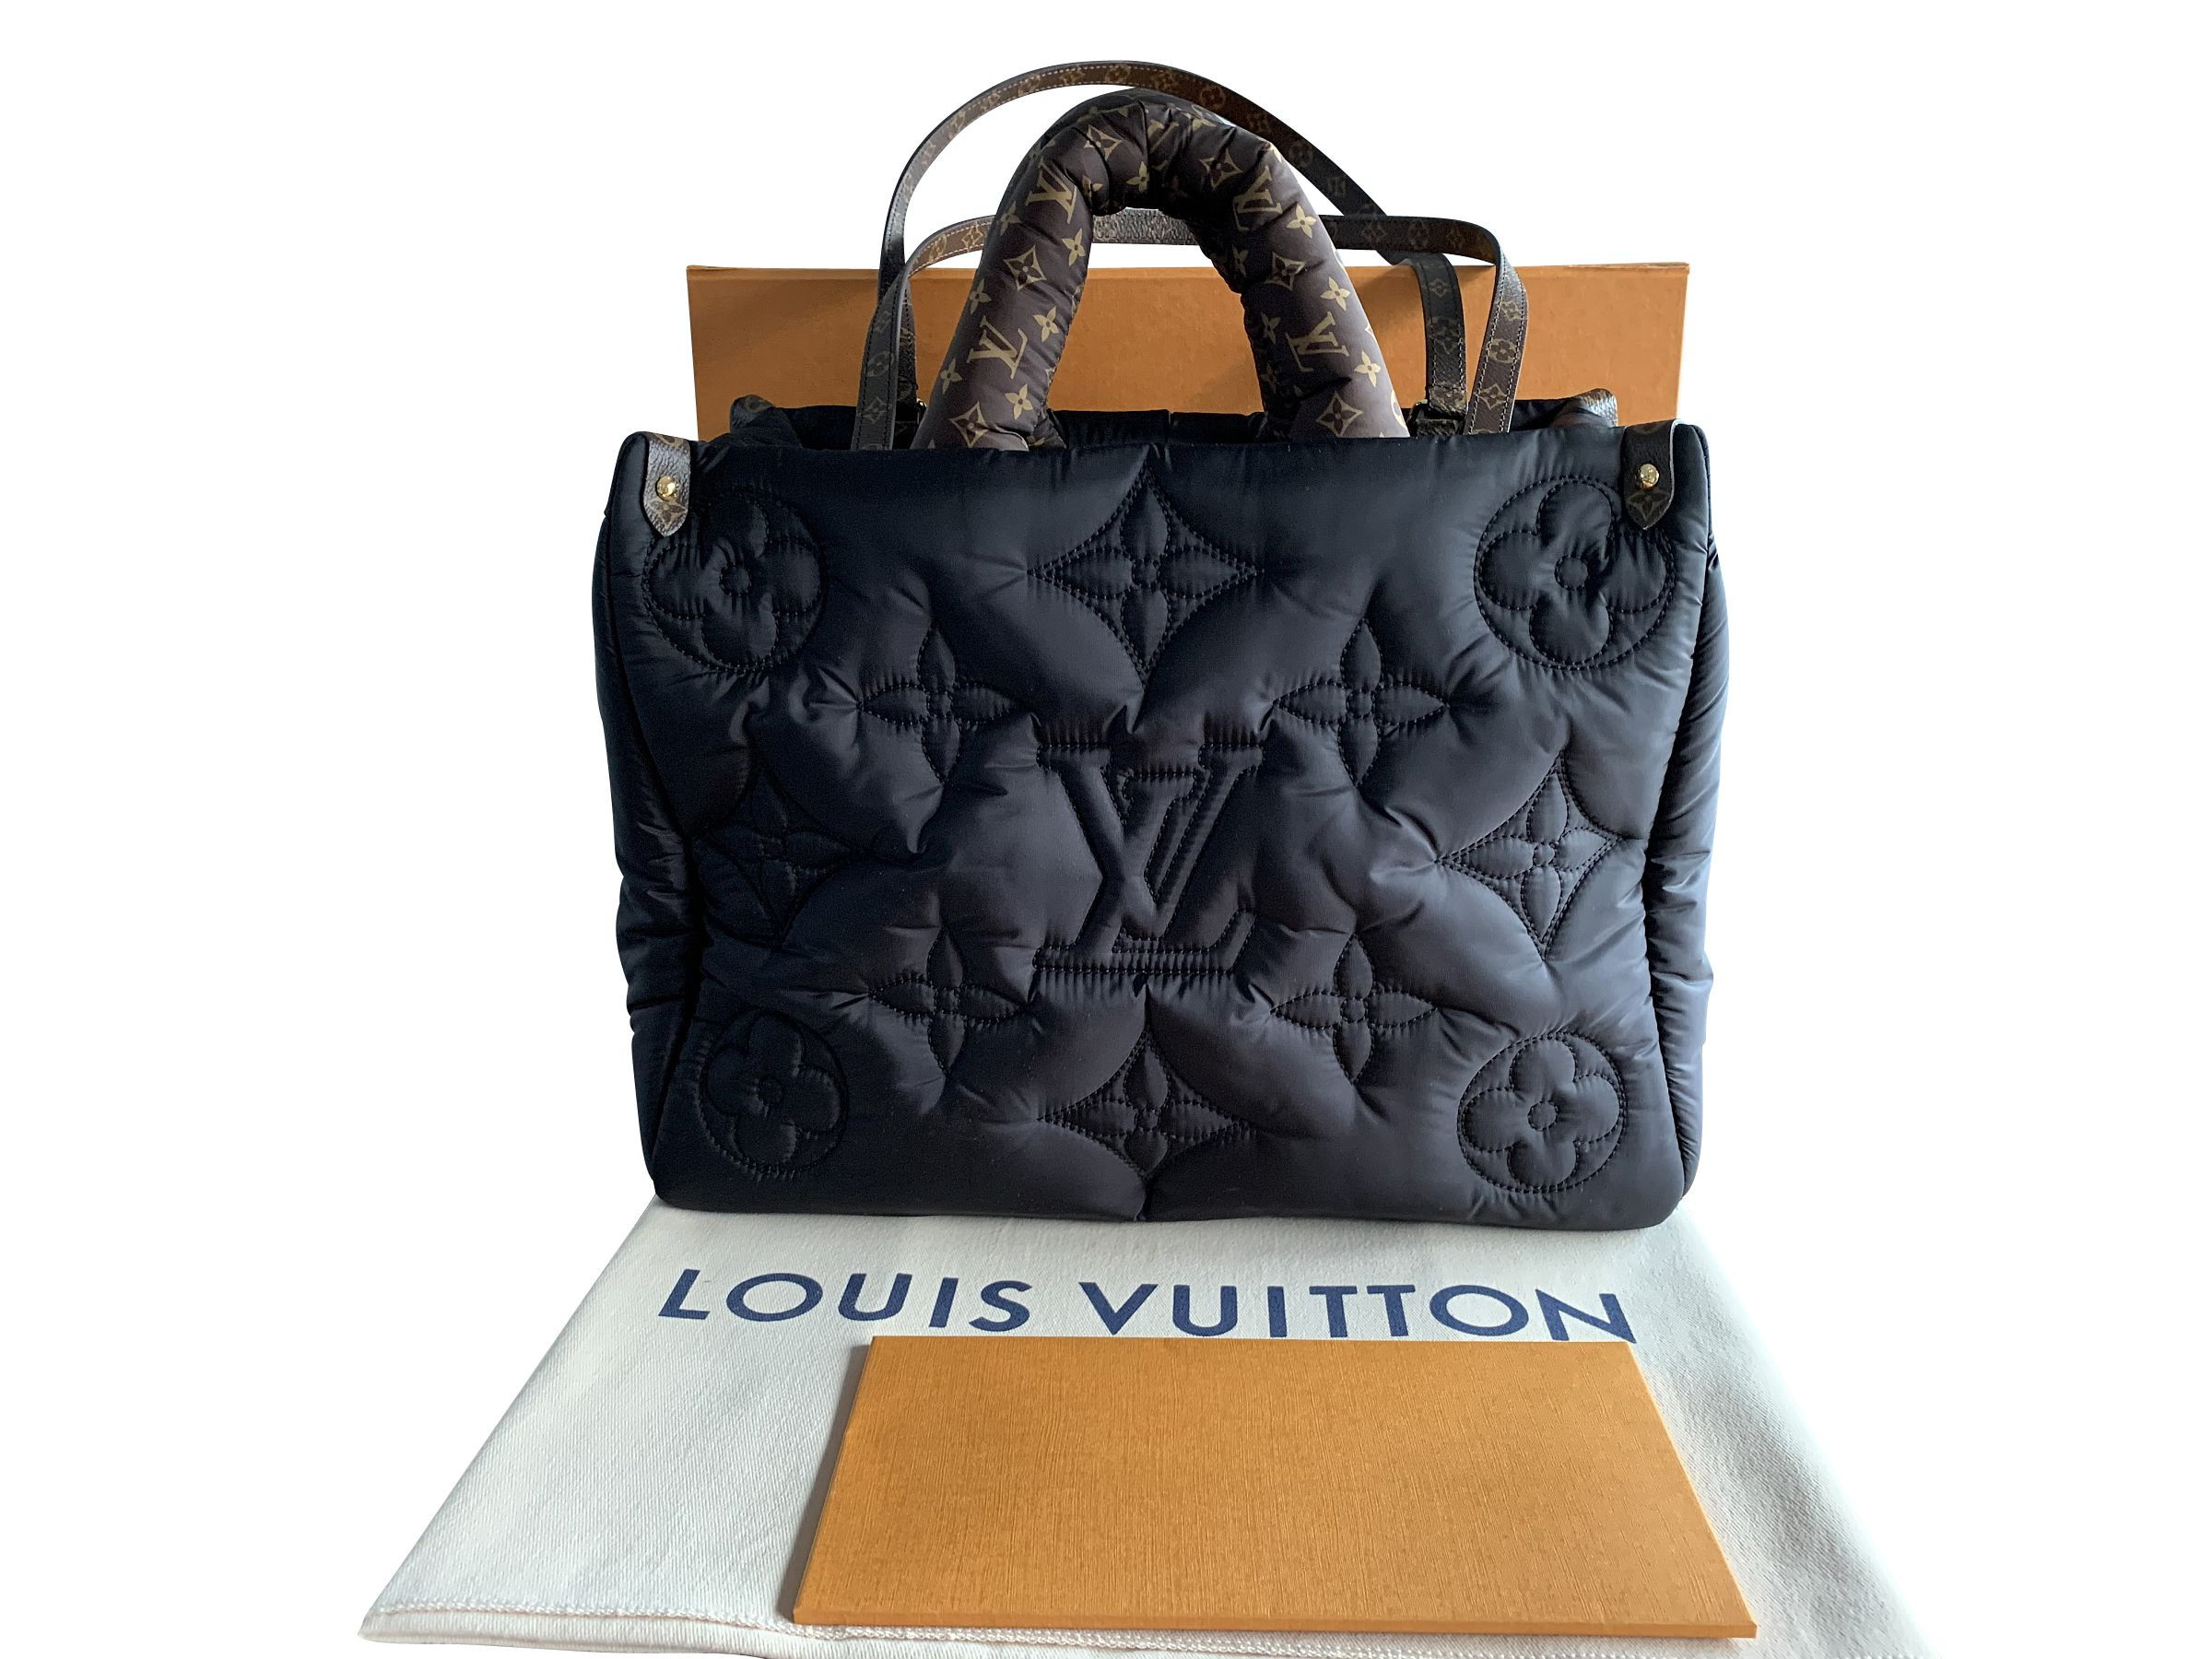 Schicke und praktische Louis Vuitton Shopper